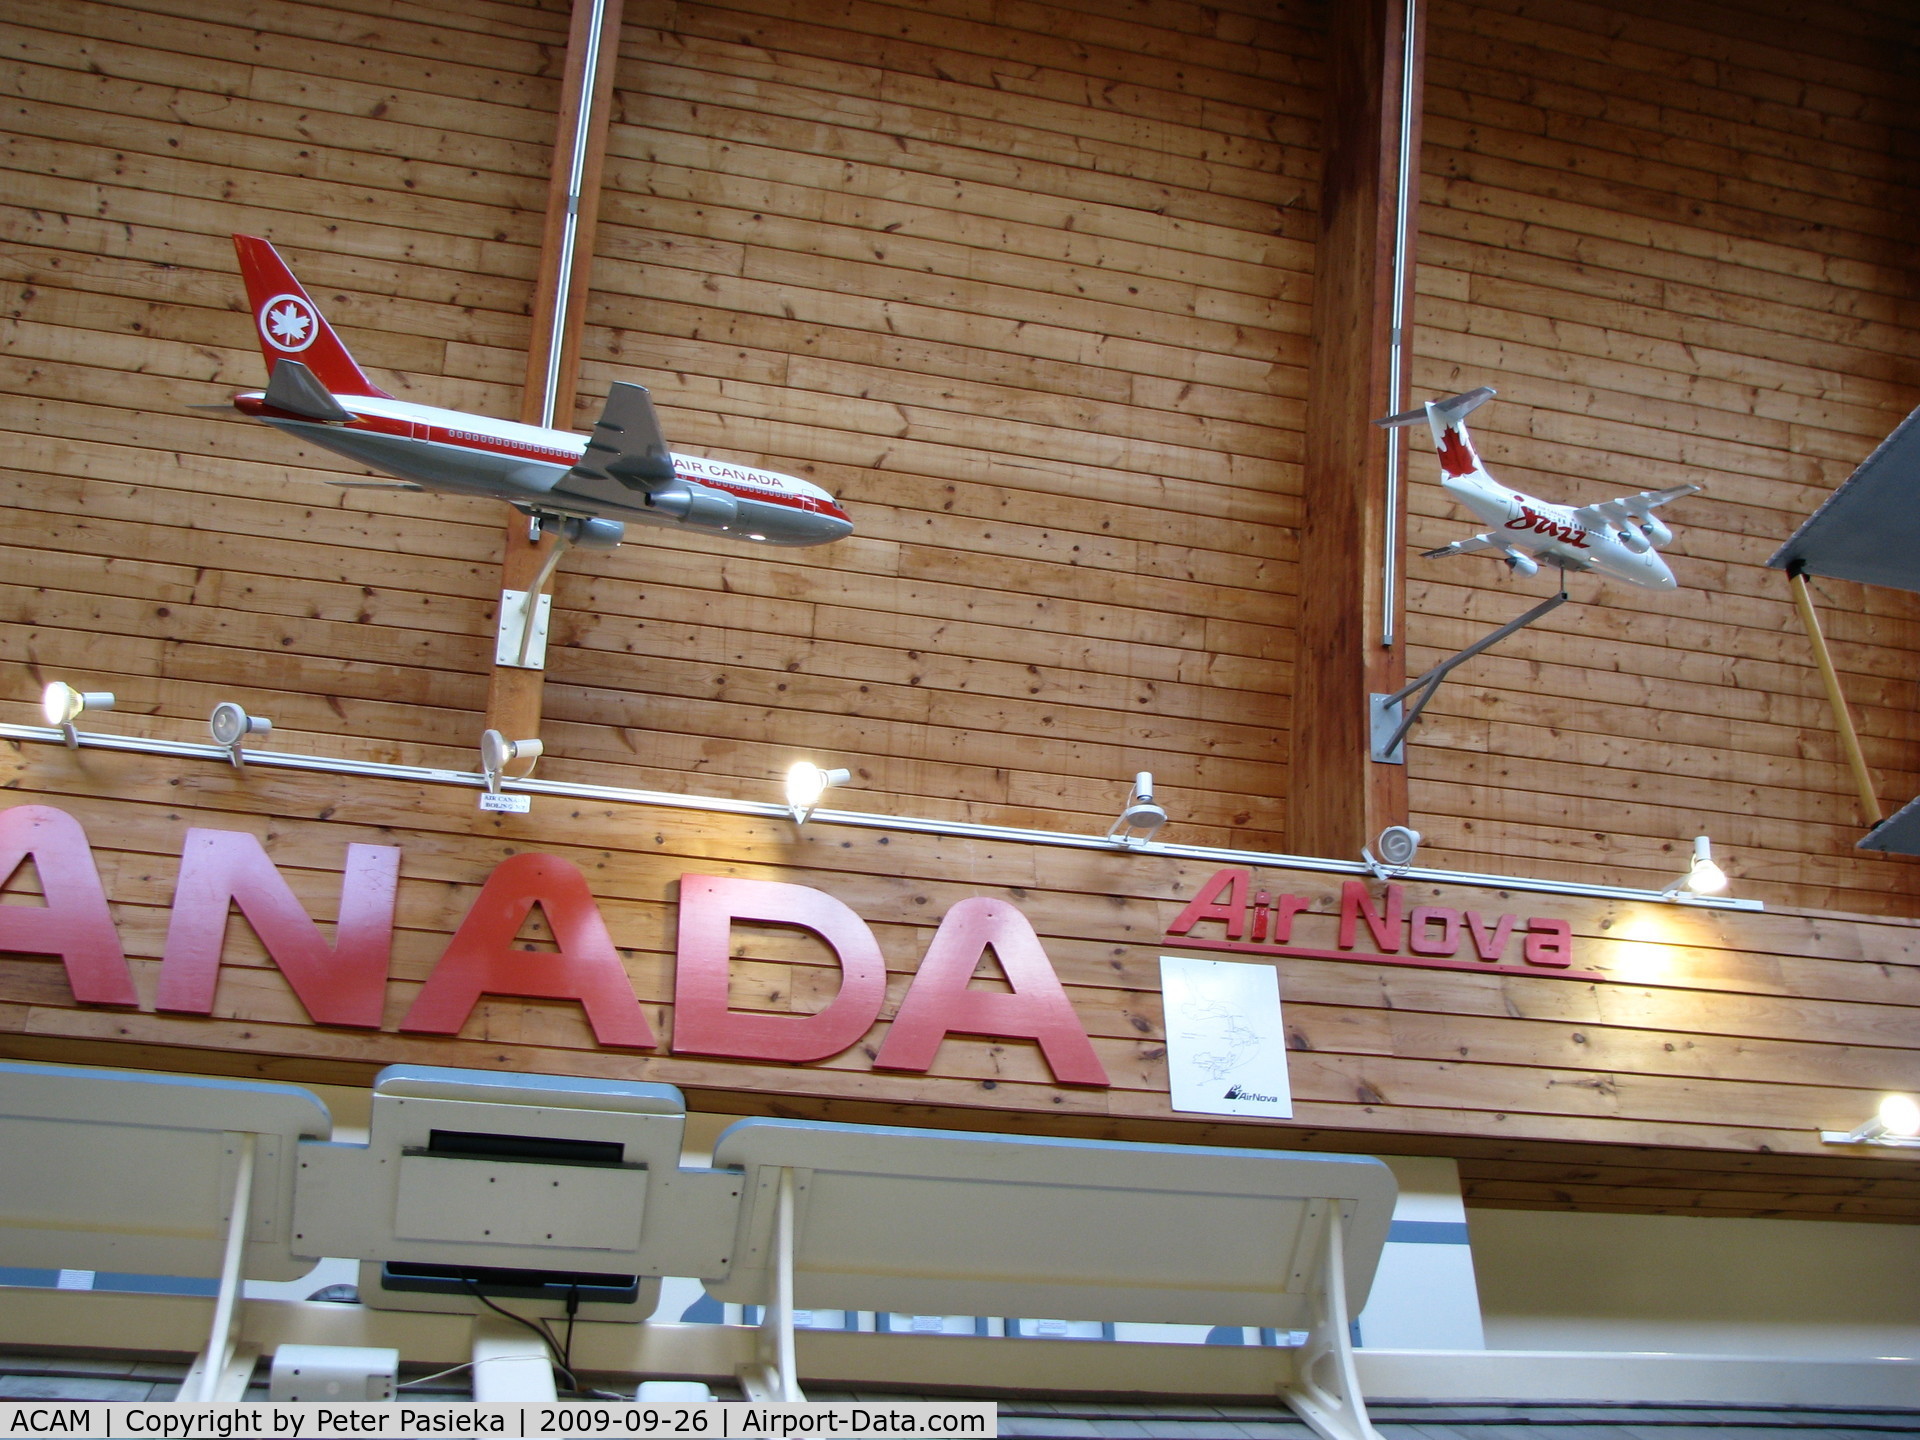 ACAM Airport - Atlantic Canada Aviation Museum